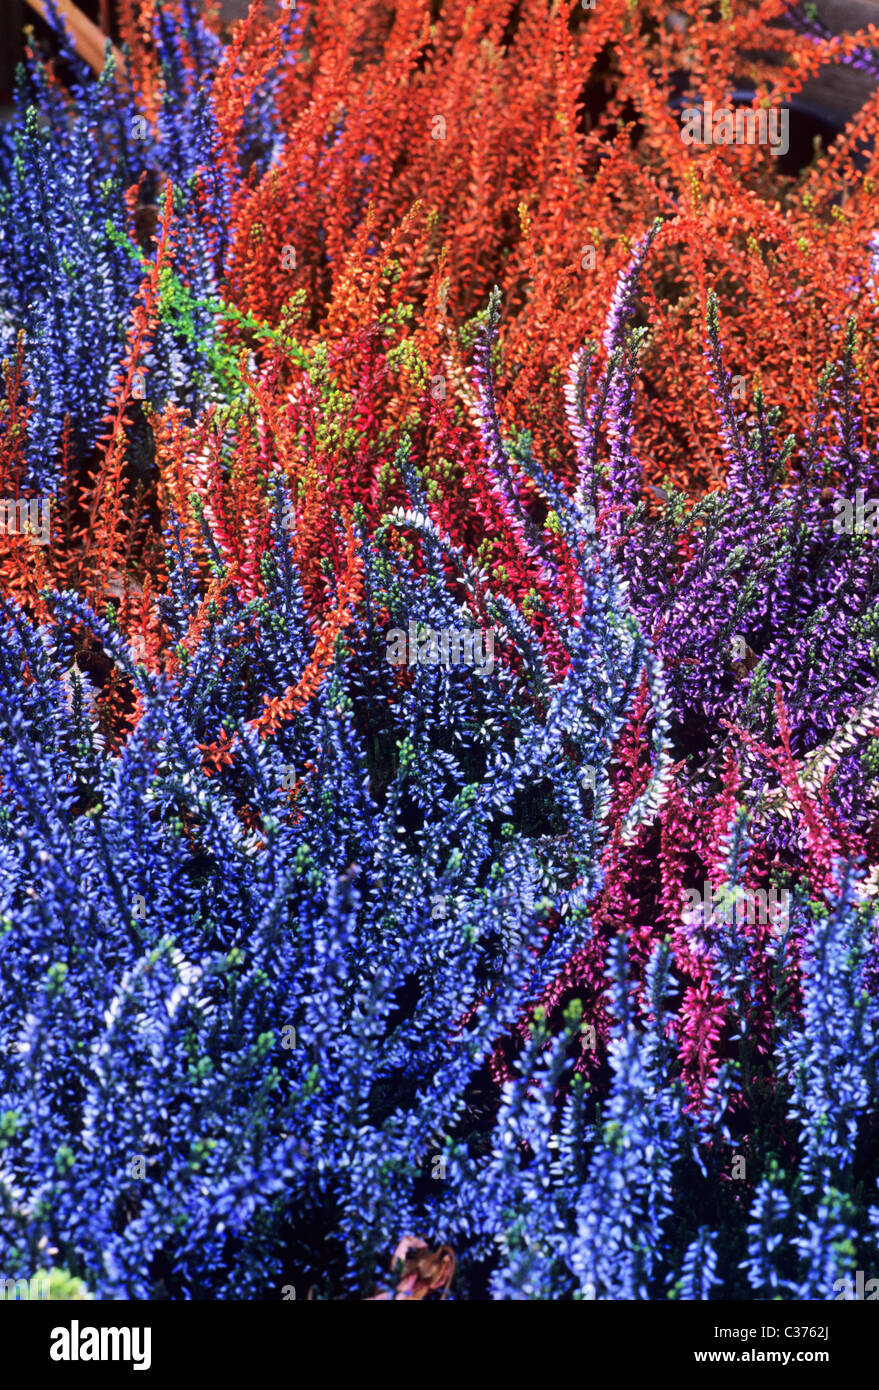 Bruyères. Automne, hiver calluna floraison fleur fleurs jardin plantes bruyère Erica coloré Couleurs mélangées Banque D'Images